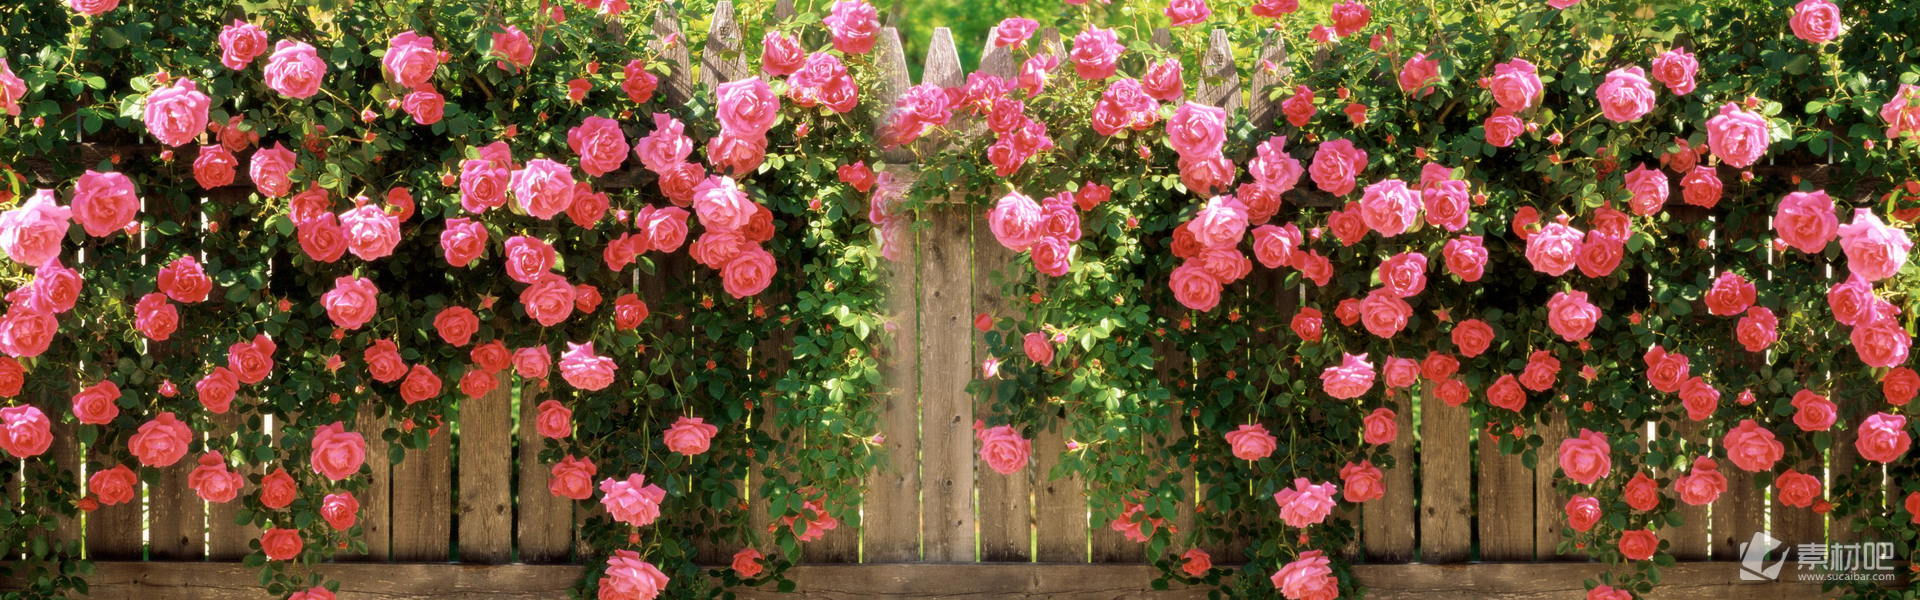 25款淘宝唯美花朵广告背景图片素材